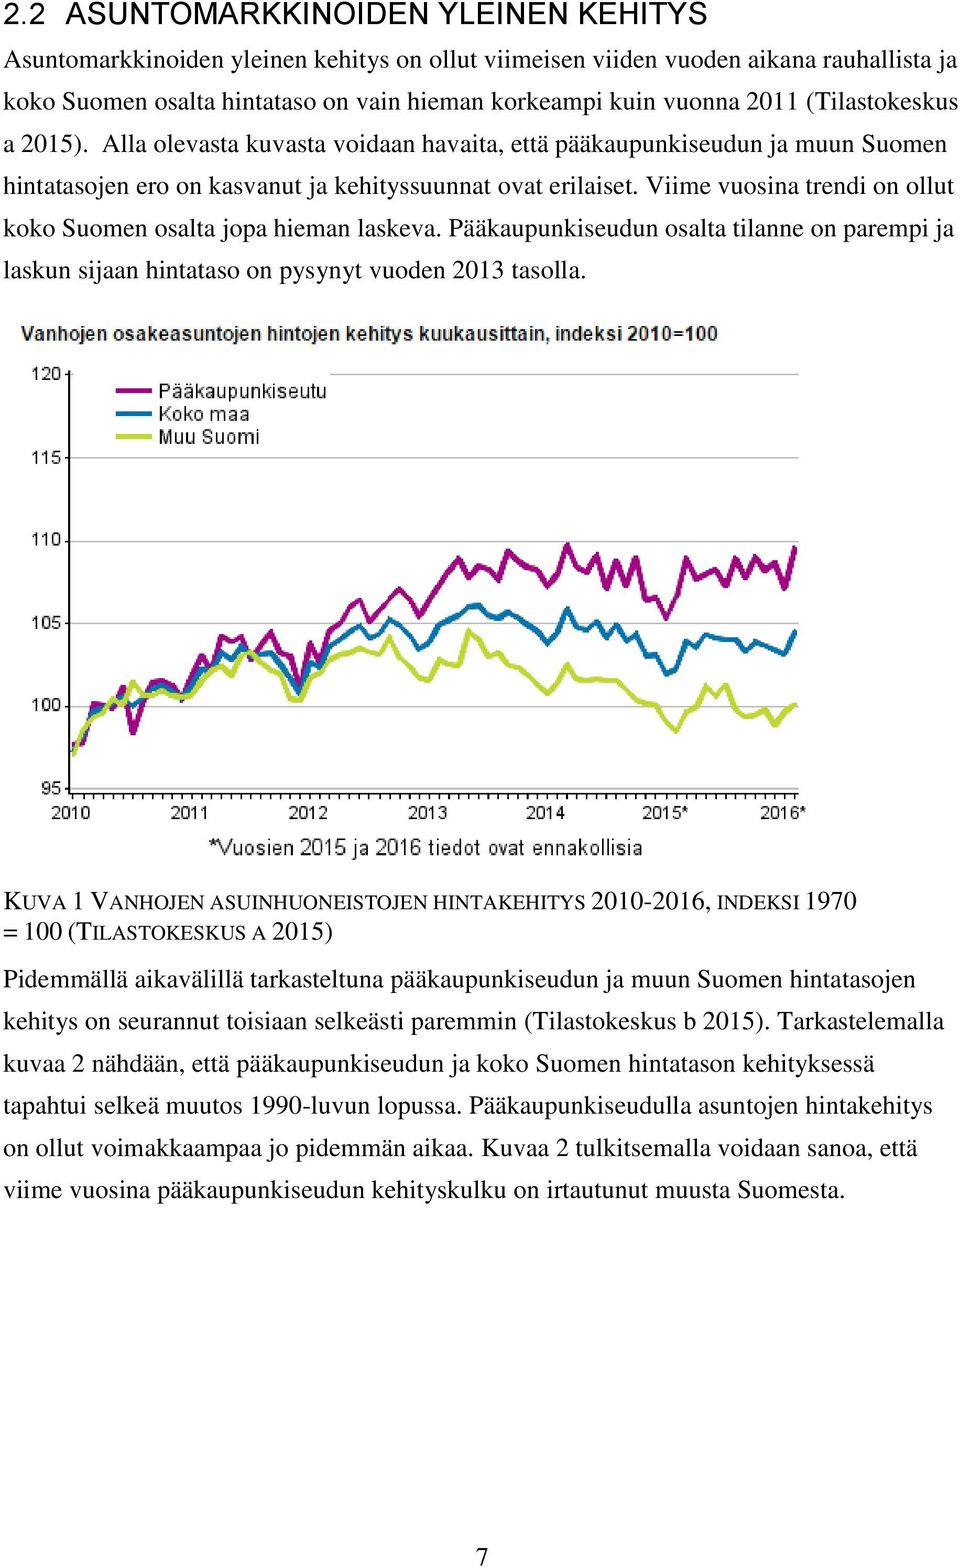 Viime vuosina trendi on ollut koko Suomen osalta jopa hieman laskeva. Pääkaupunkiseudun osalta tilanne on parempi ja laskun sijaan hintataso on pysynyt vuoden 2013 tasolla.